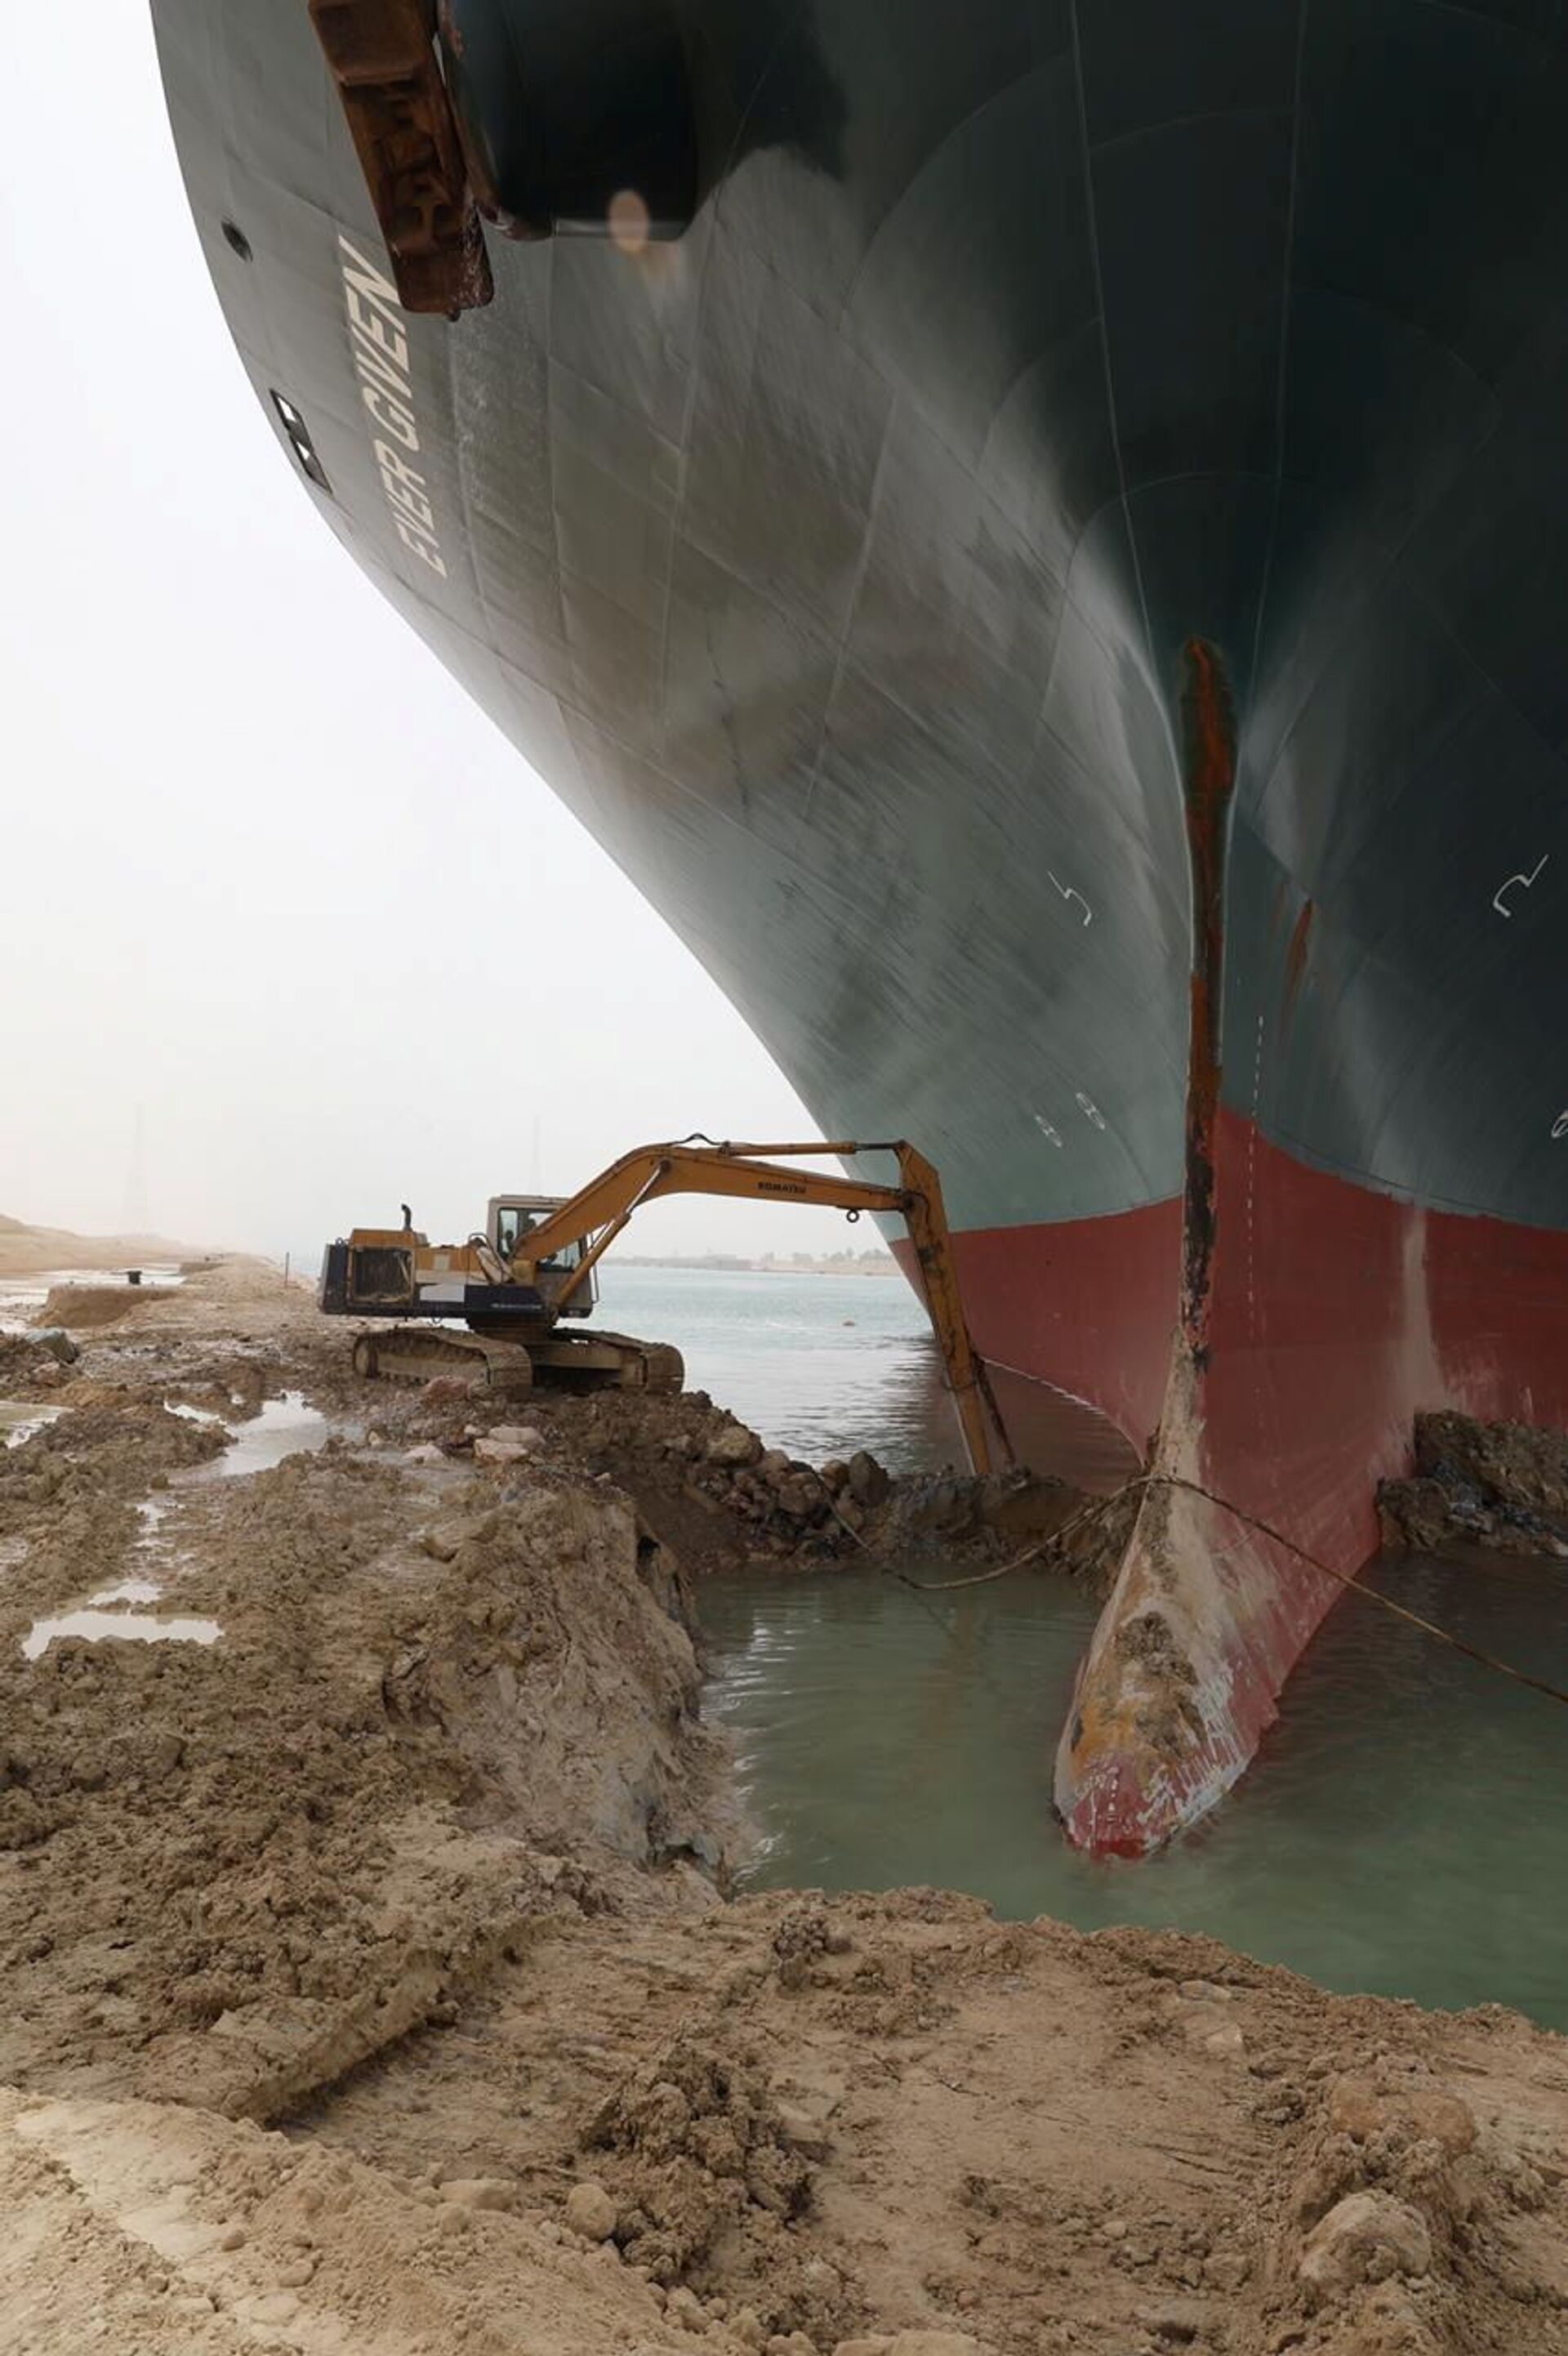 Remoção do navio no Canal de Suez 'pode levar semanas', diz empresa que trabalha no reboque (FOTOS) - Sputnik Brasil, 1920, 25.03.2021